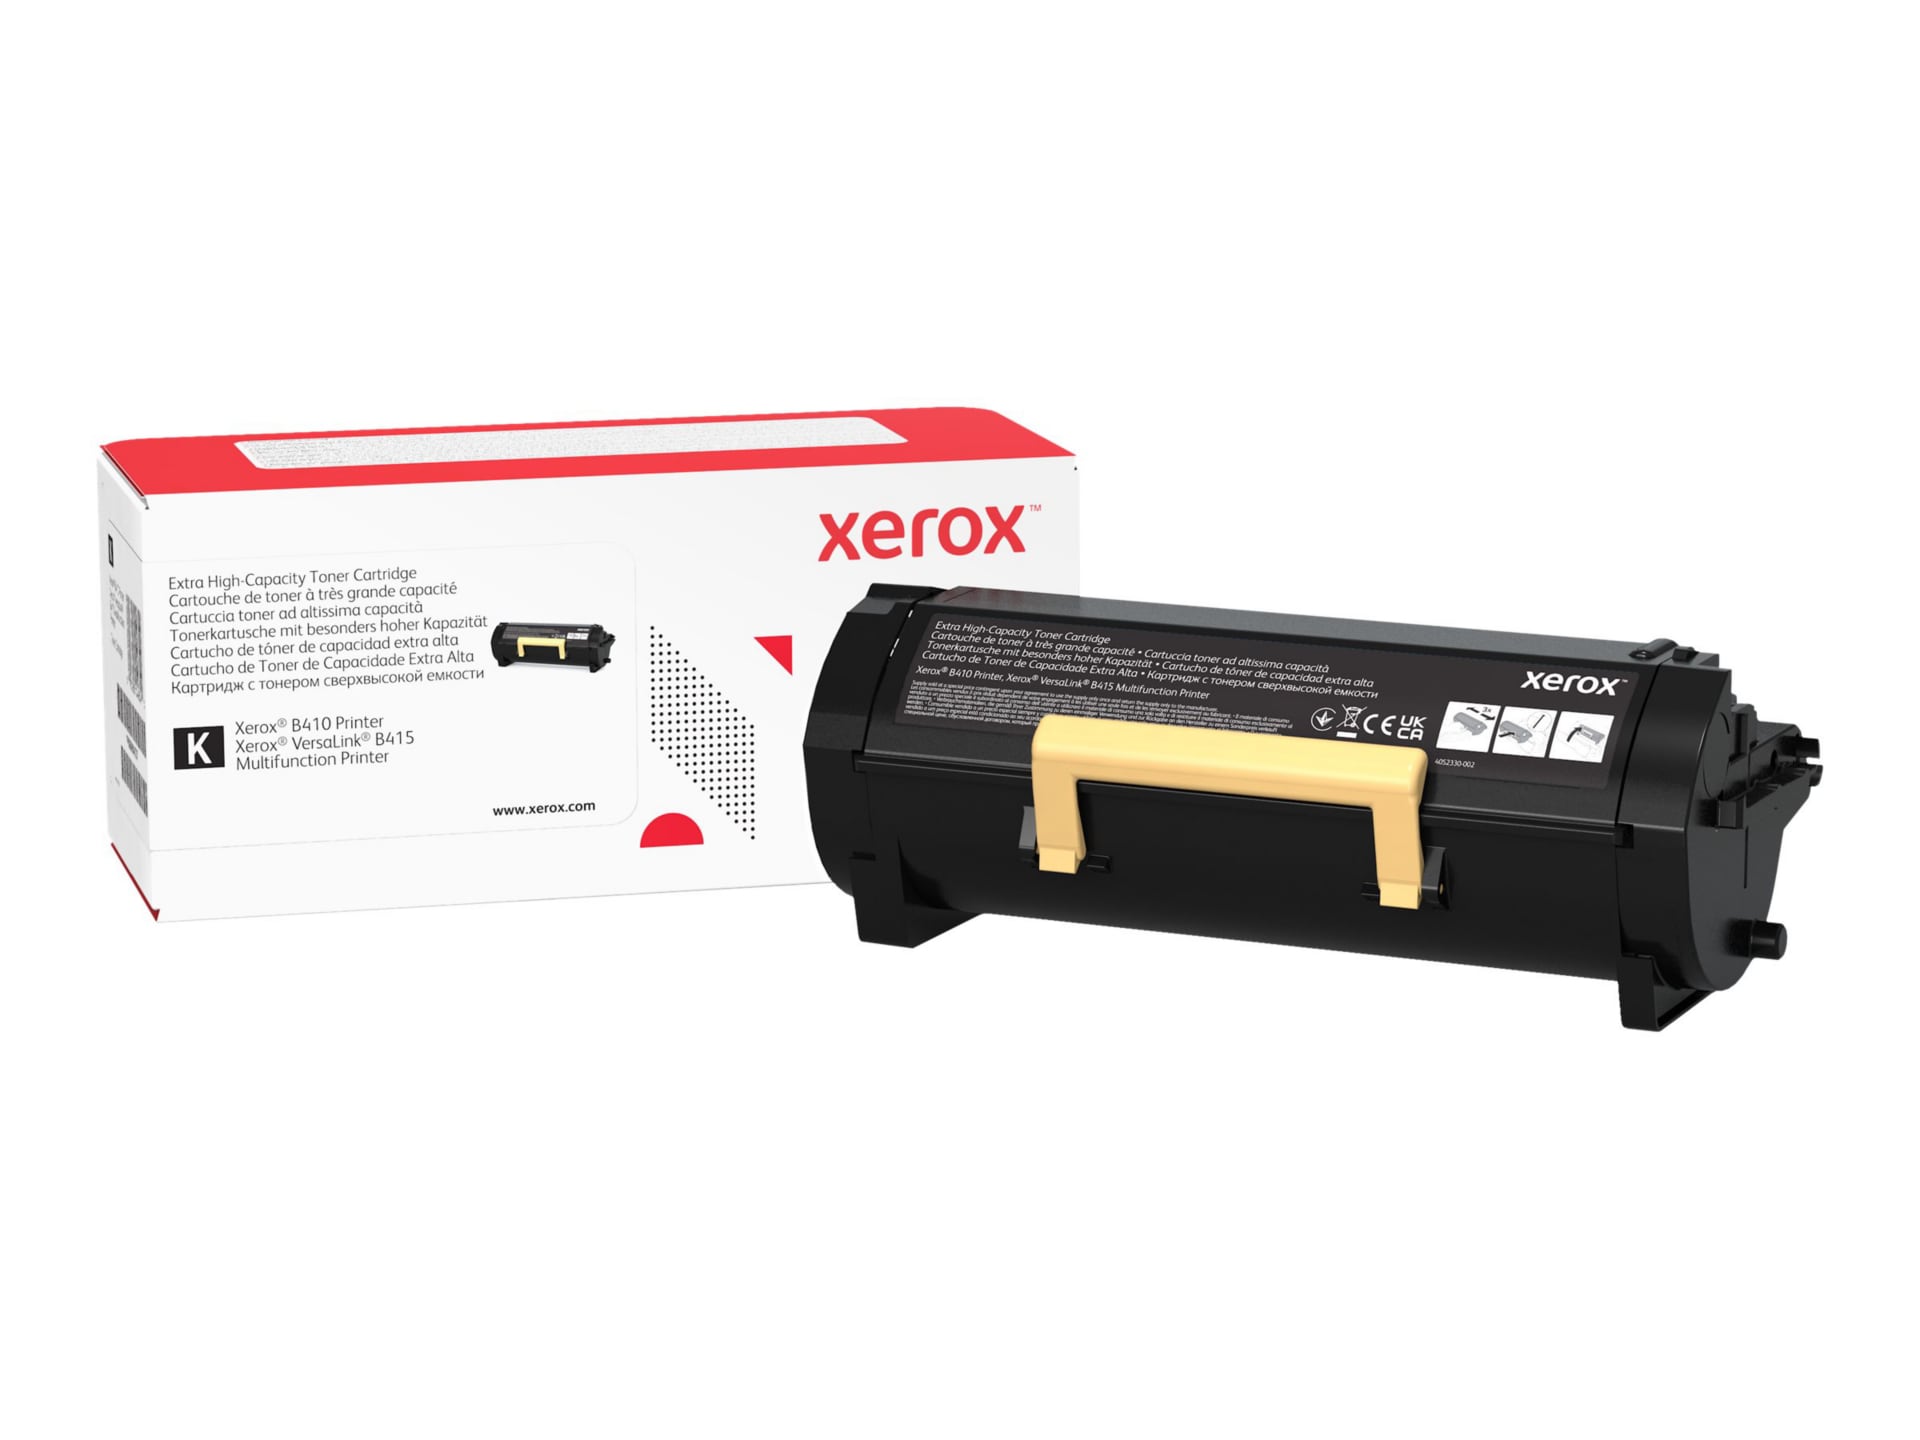 Xerox - Capacité très élevée - noir - original - cartouche de toner - Use and Return